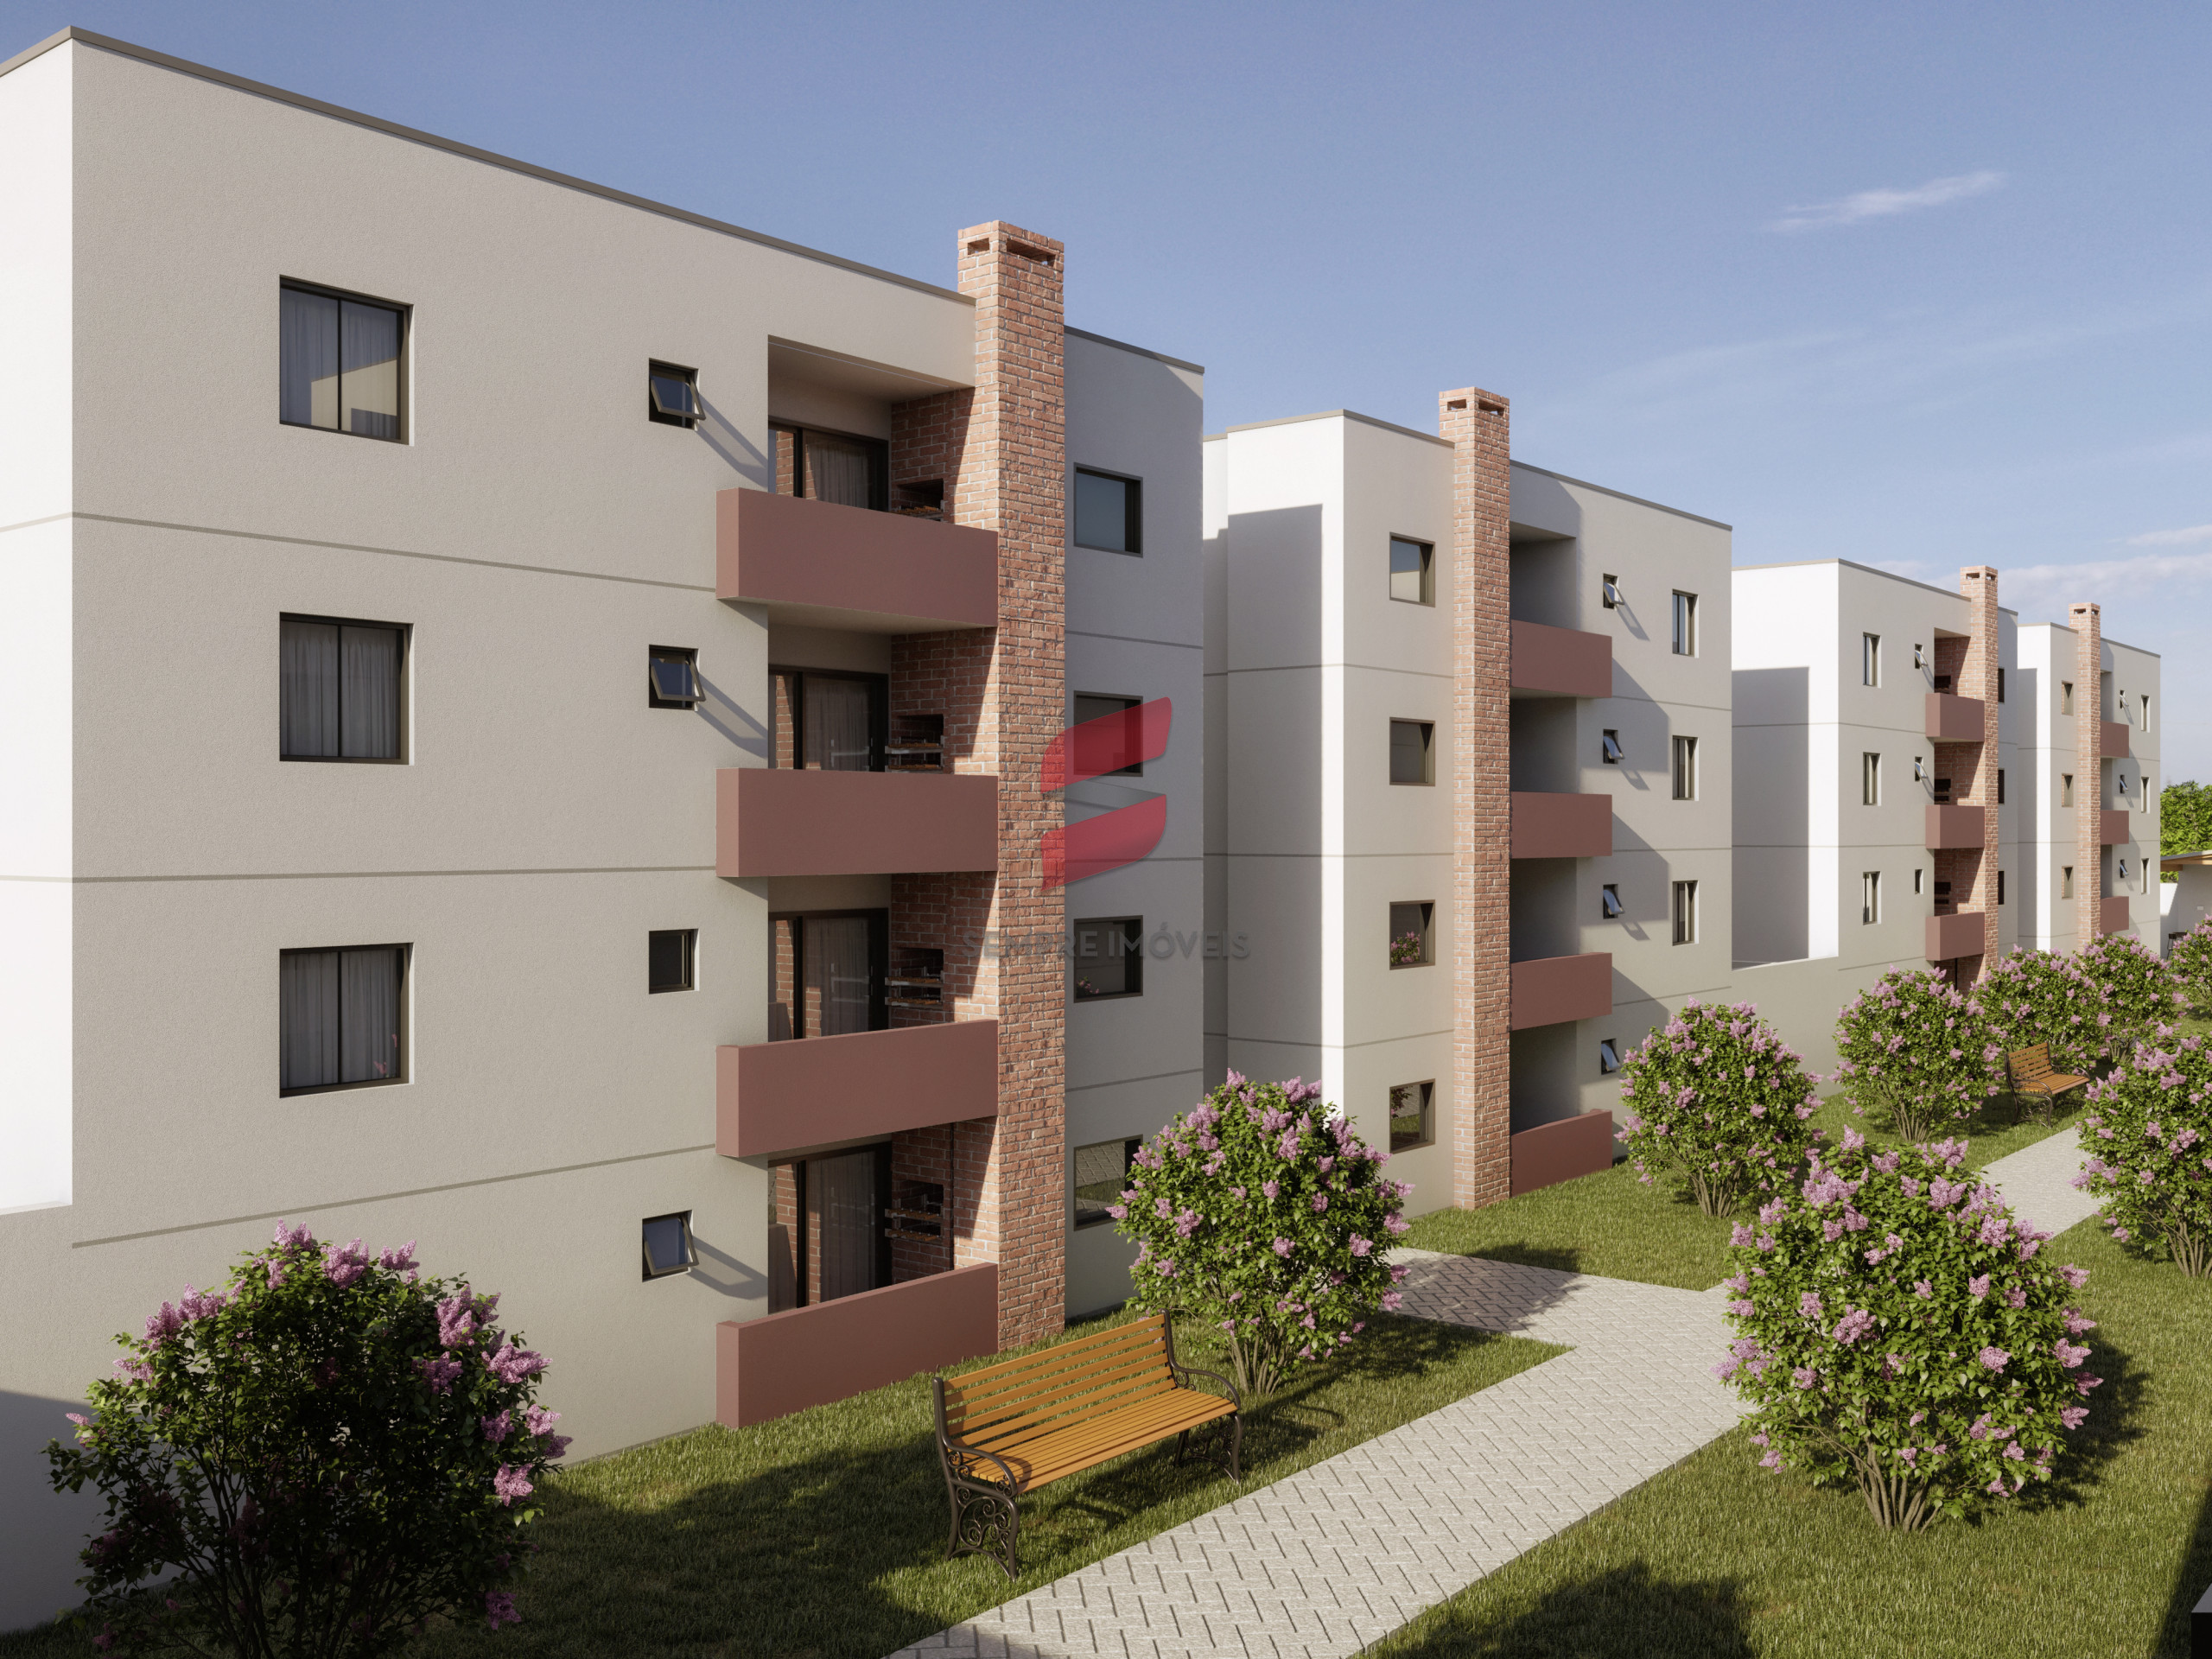 APARTAMENTO com 2 dormitórios à venda com 57m² por R$ 242.000,00 no bairro Vargem Grande - PINHAIS / PR